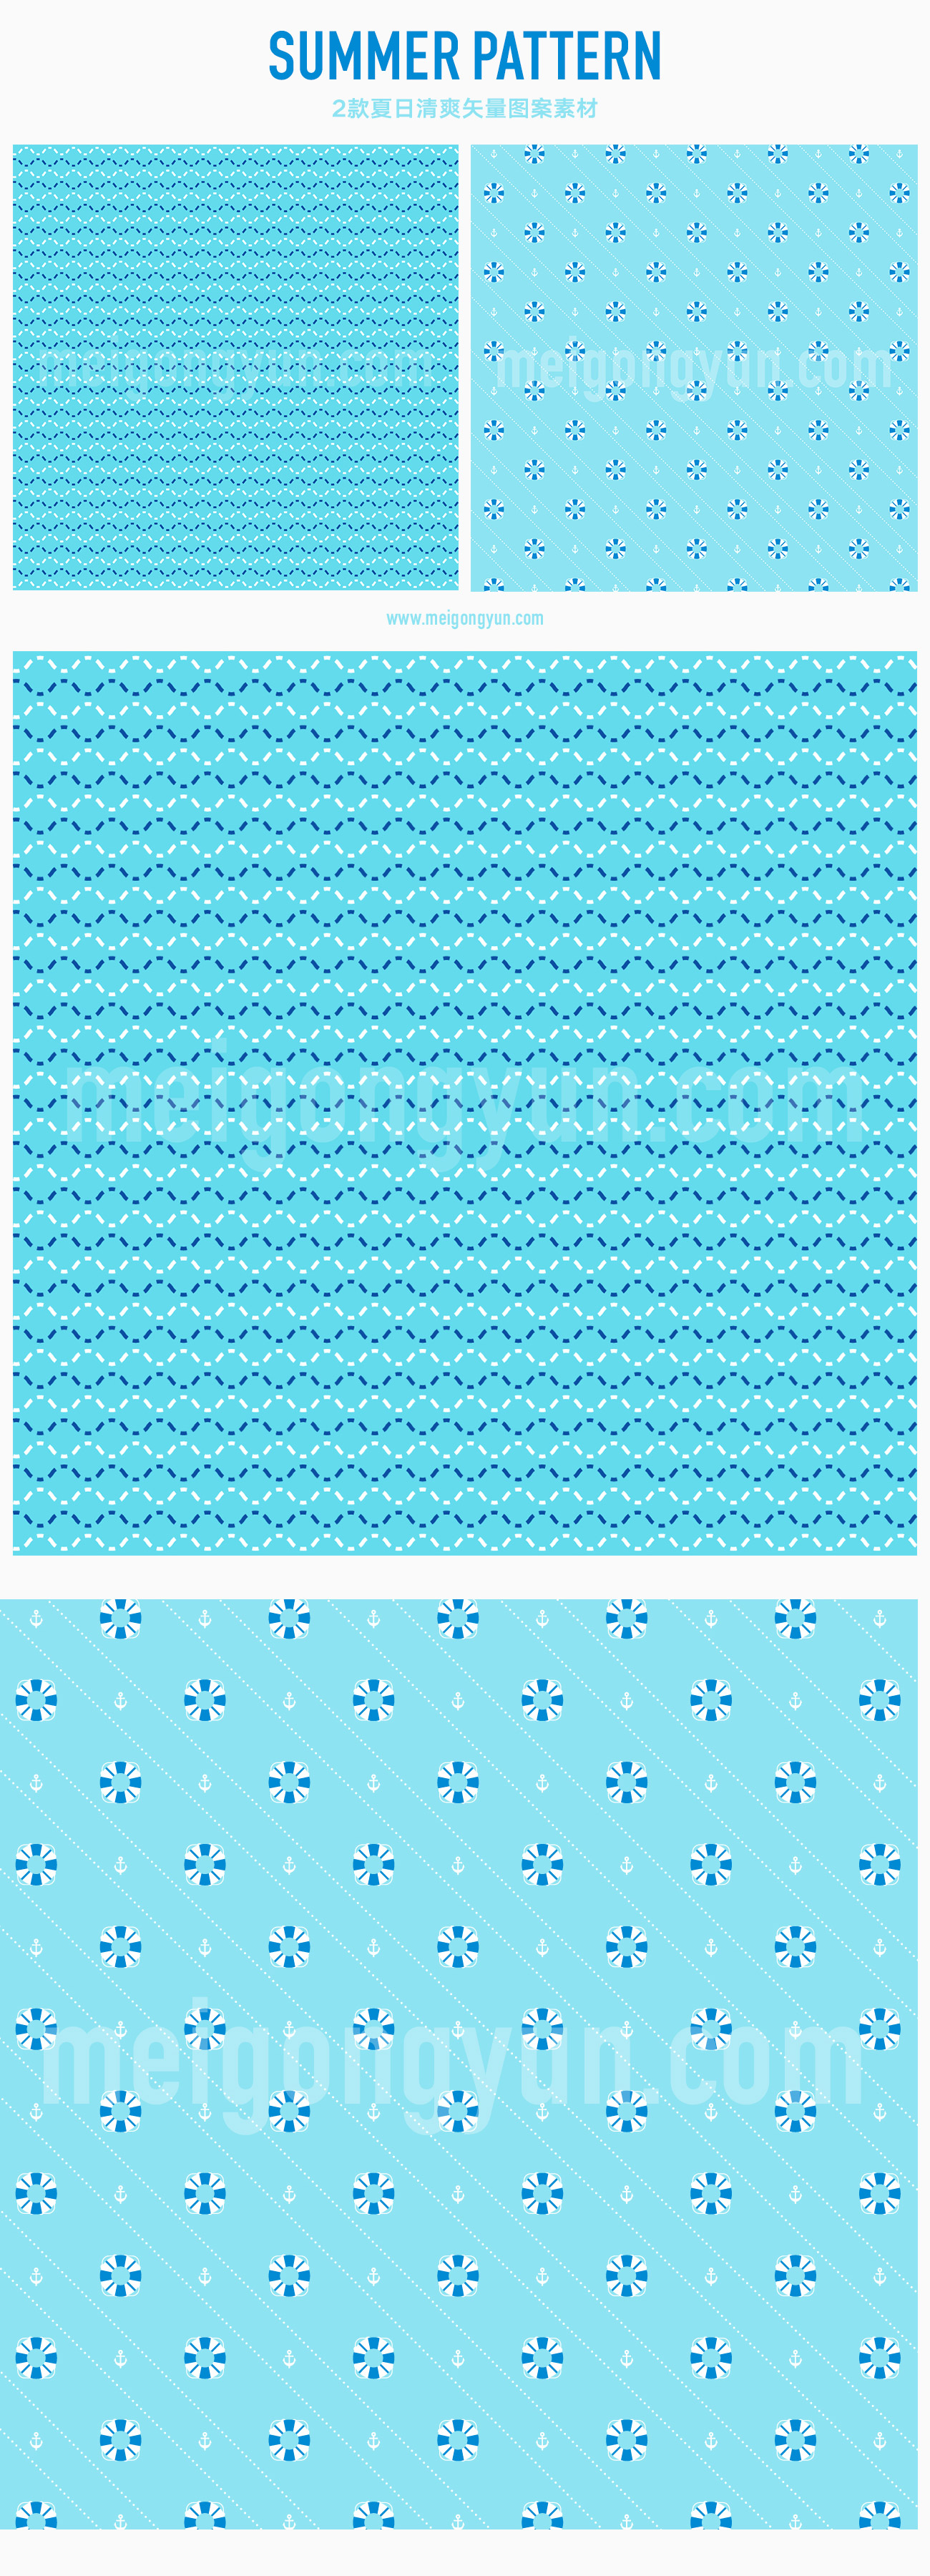 2枚清凉夏日【几何图案&游泳圈】无缝拼接AI矢量图案